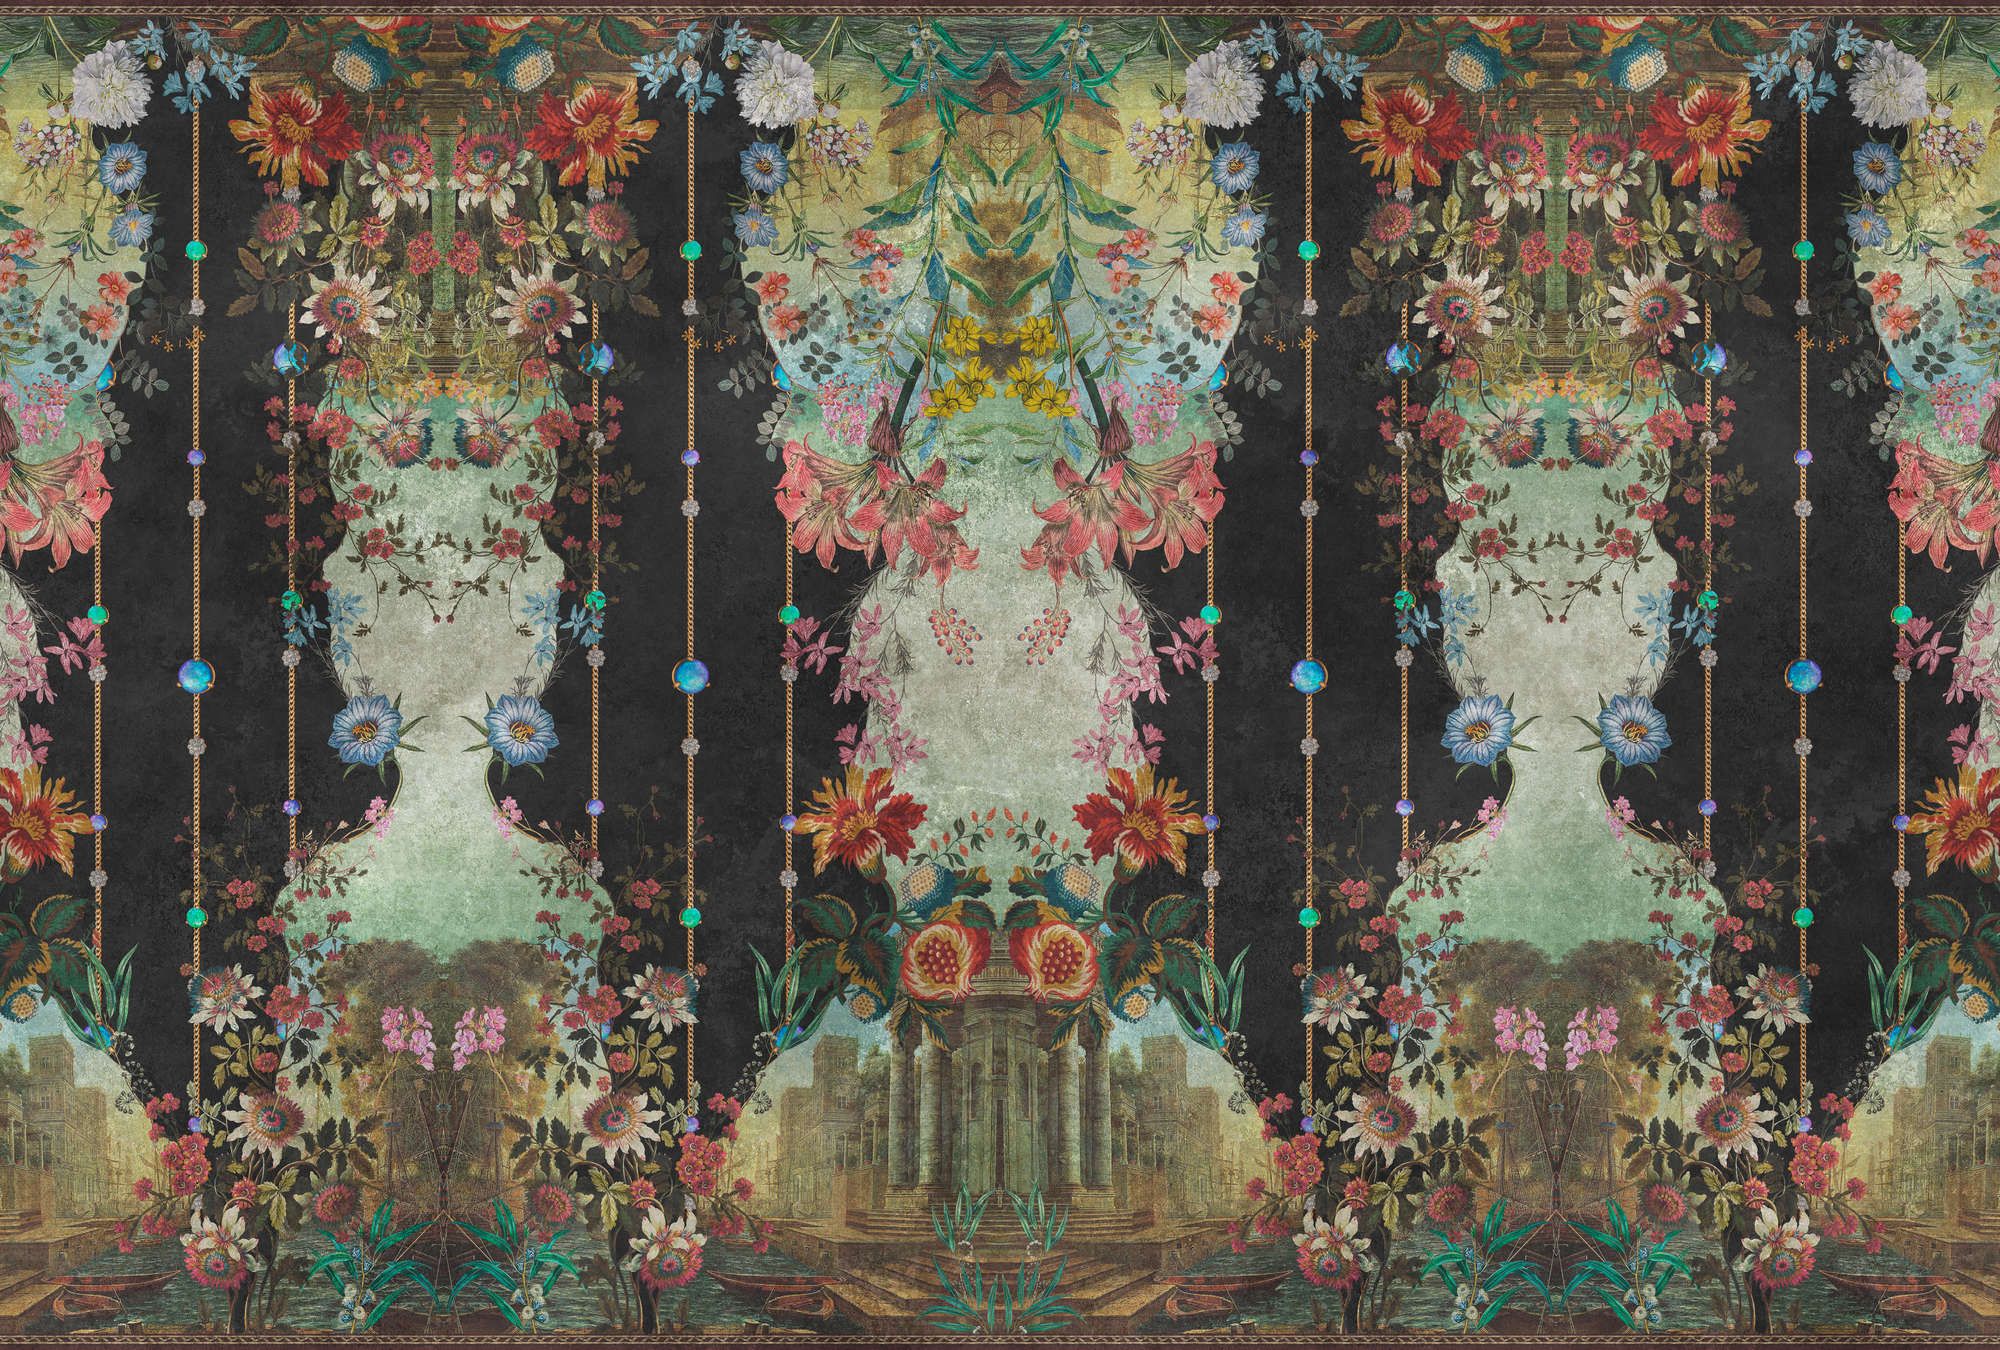             Fototapete »ophelia« - Ornamentvertäfelung mit Blütendesign auf Vintage-Putzstruktur – Glattes, leicht perlmutt-schimmerndes Vlies
        